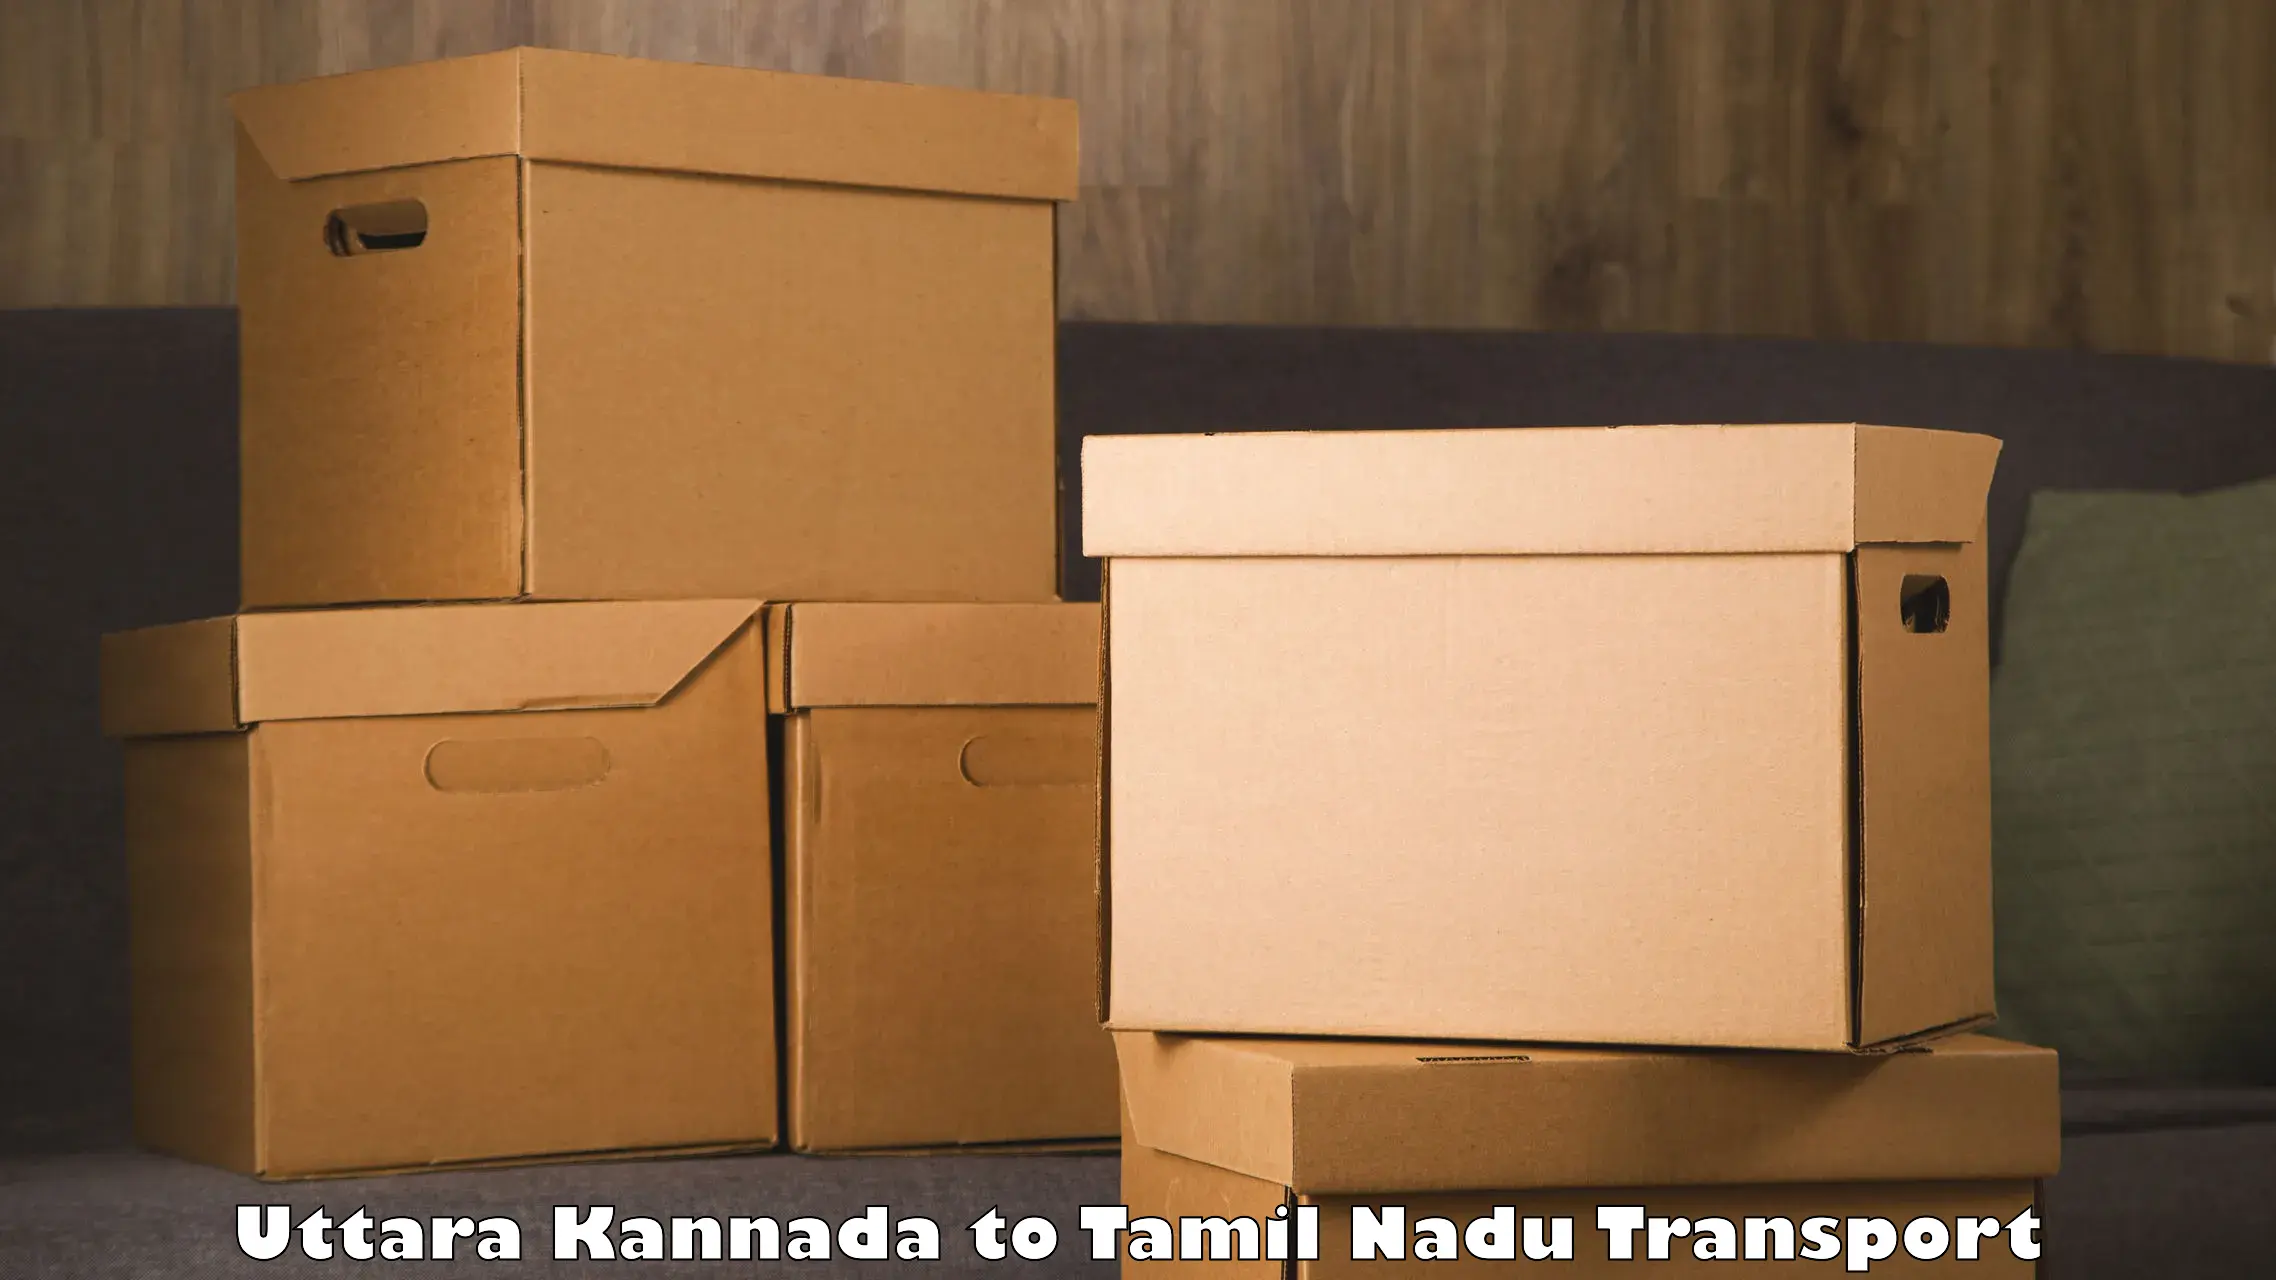 Commercial transport service Uttara Kannada to Melur